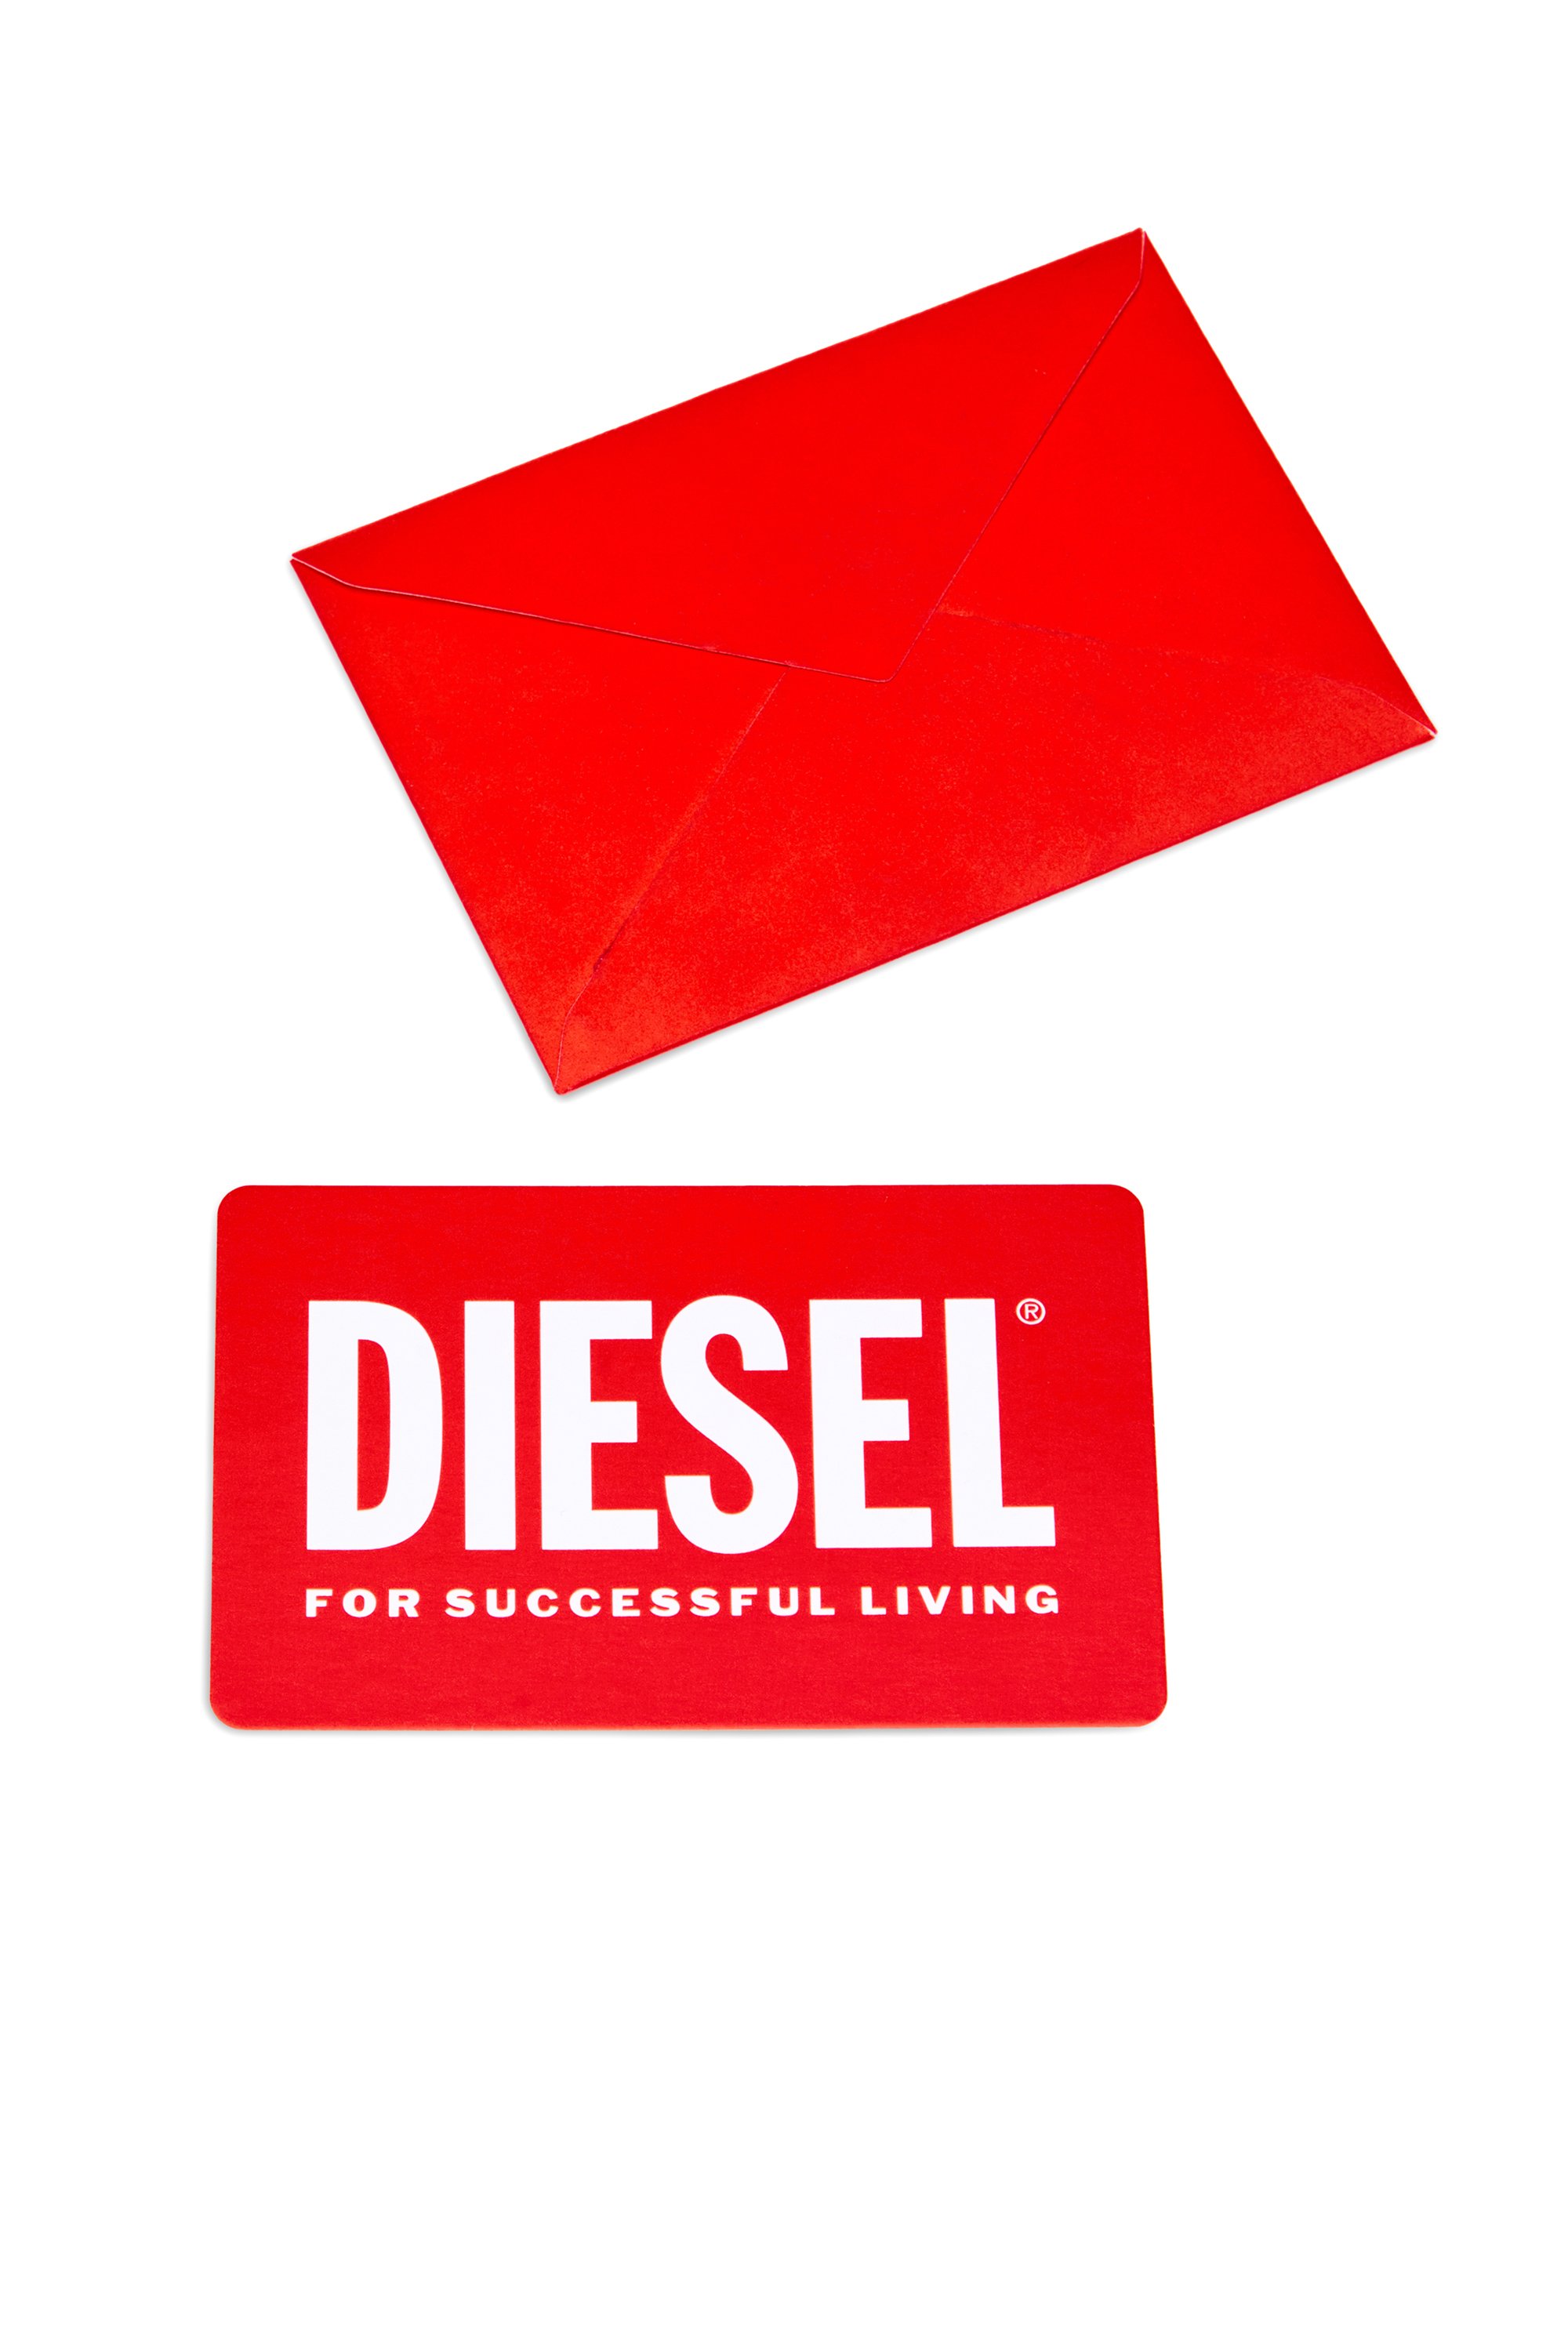 Diesel - Gift card, Red - Image 2